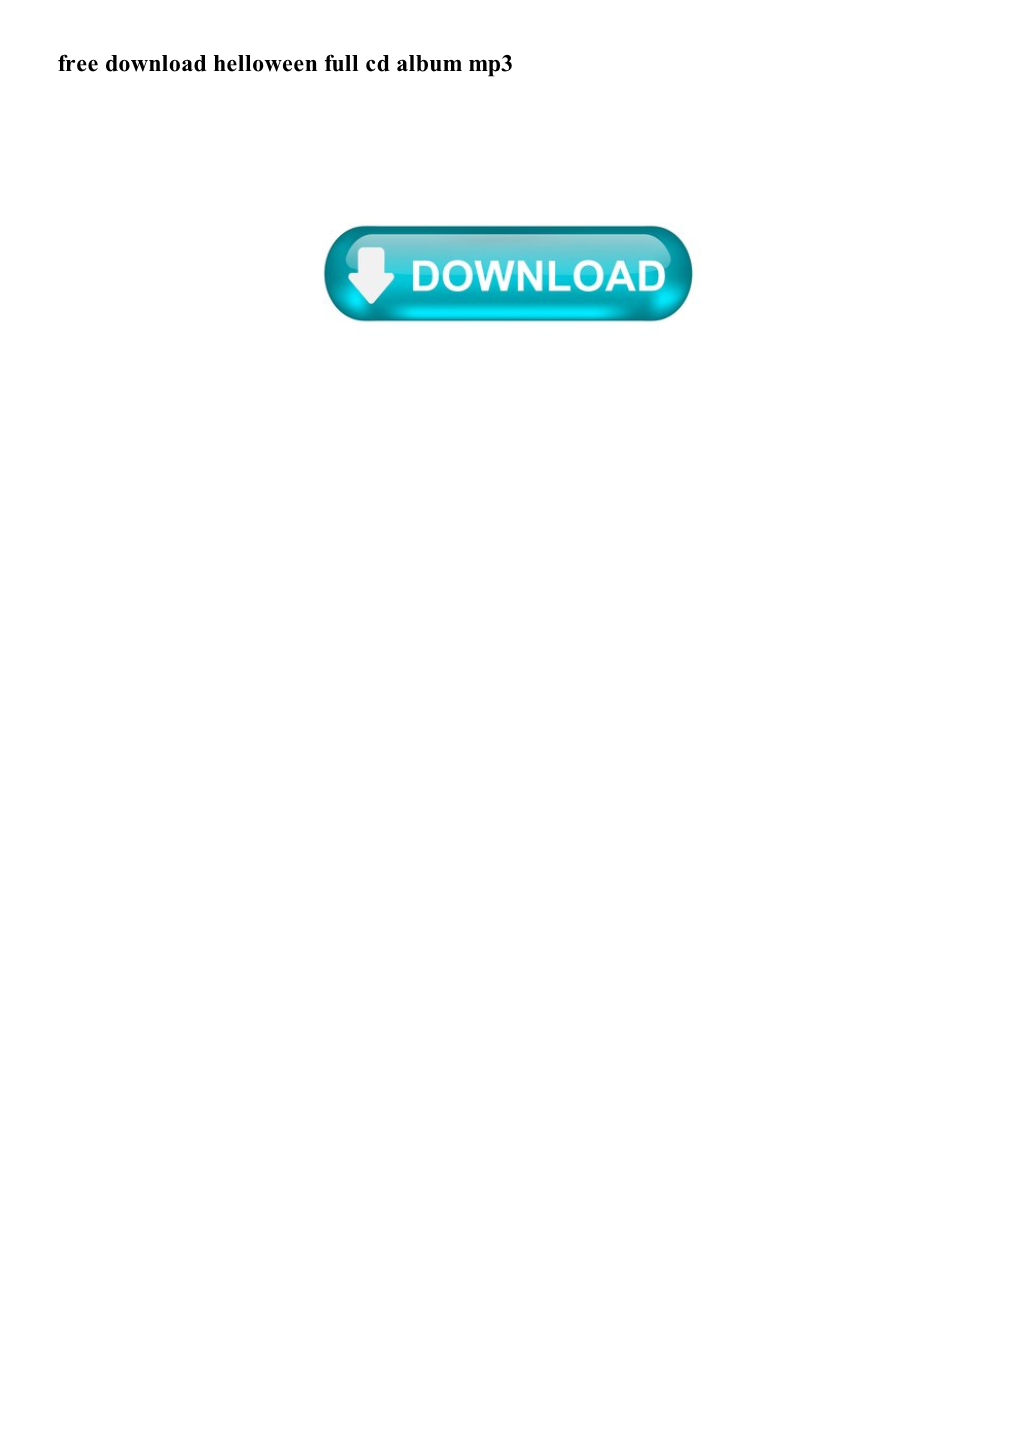 Free Download Helloween Full Cd Album Mp3 HELLOWEEN